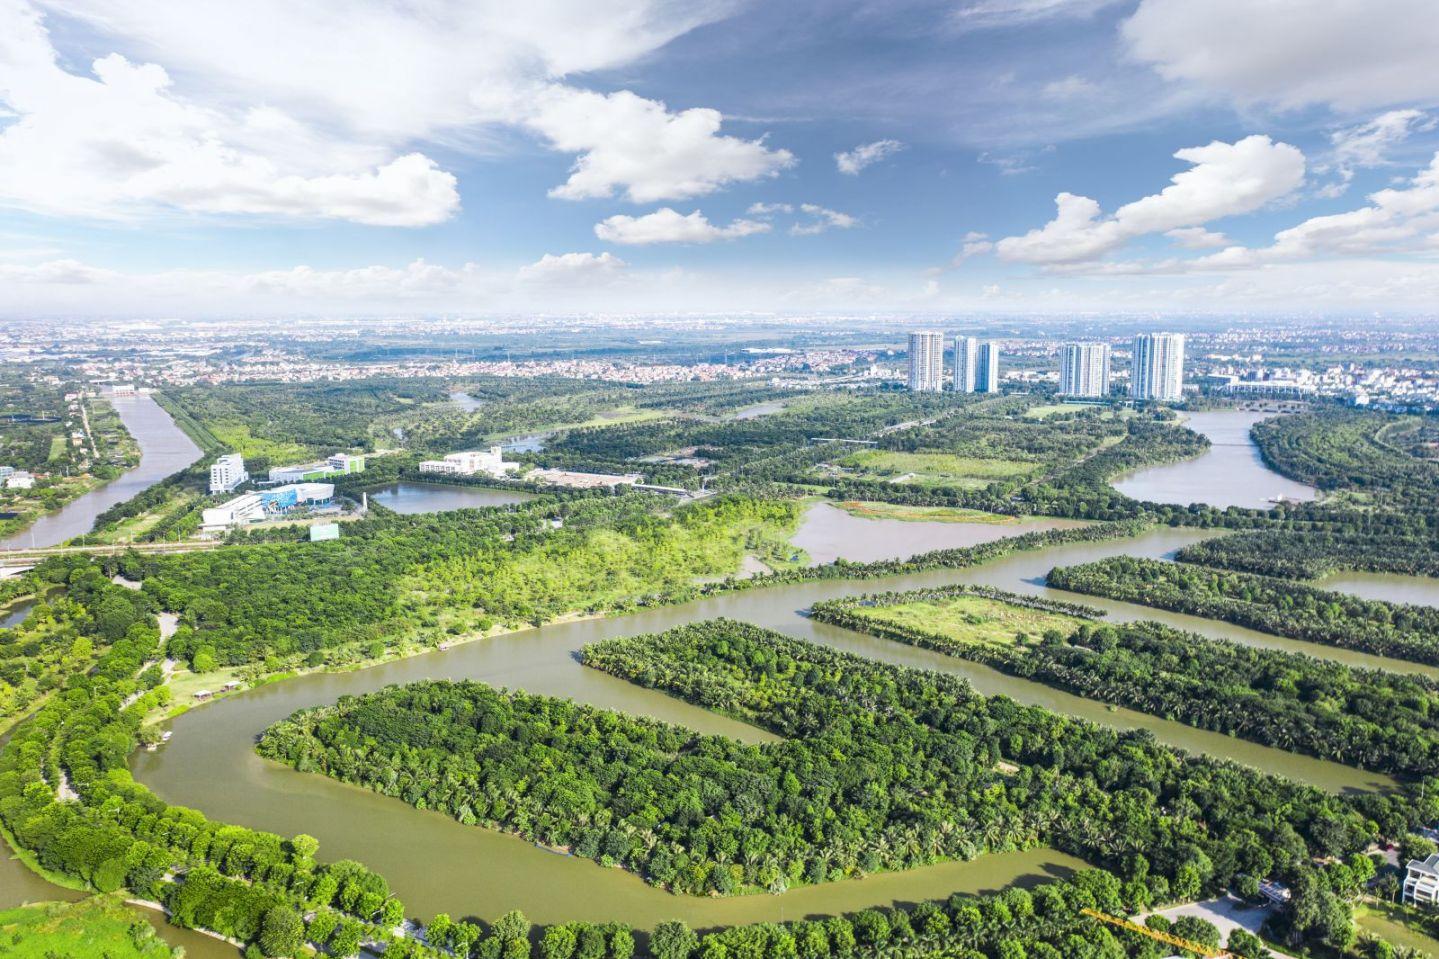 Với hình mẫu đô thị sinh thái của phía Đông Nam, Hà Nội hoàn toàn có thể nhân rộng những đô thị kiểu mẫu này dọc hai bên bở sông Hồng